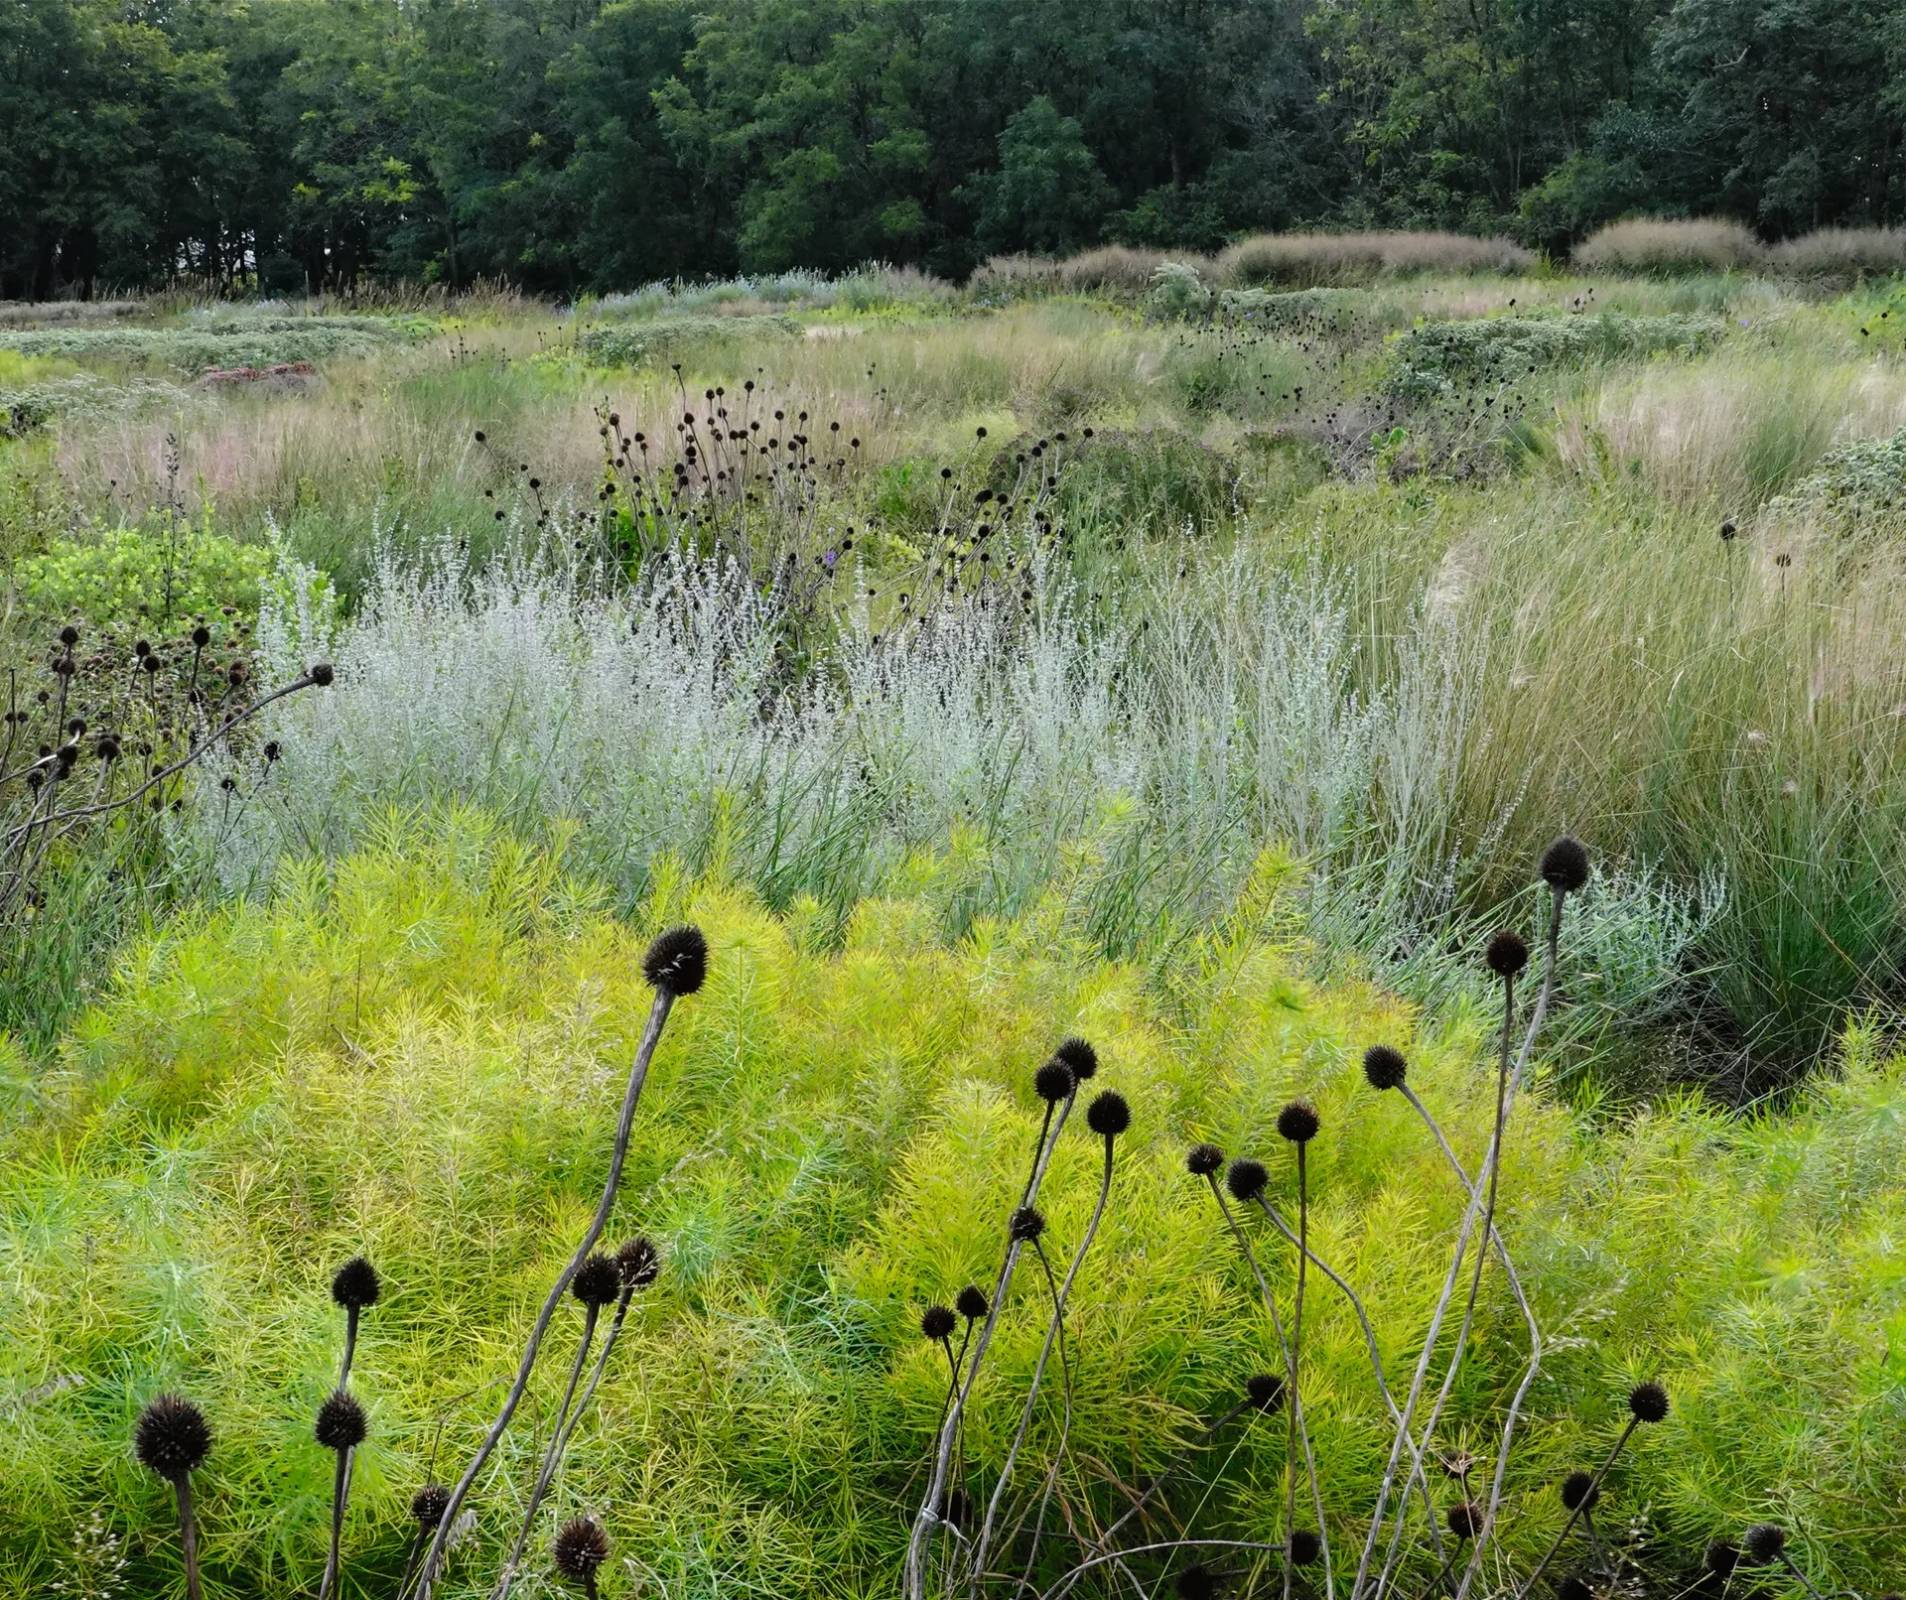 Efektowna jeżówka blada w ogrodzie botanicznym w Delaware, USA.